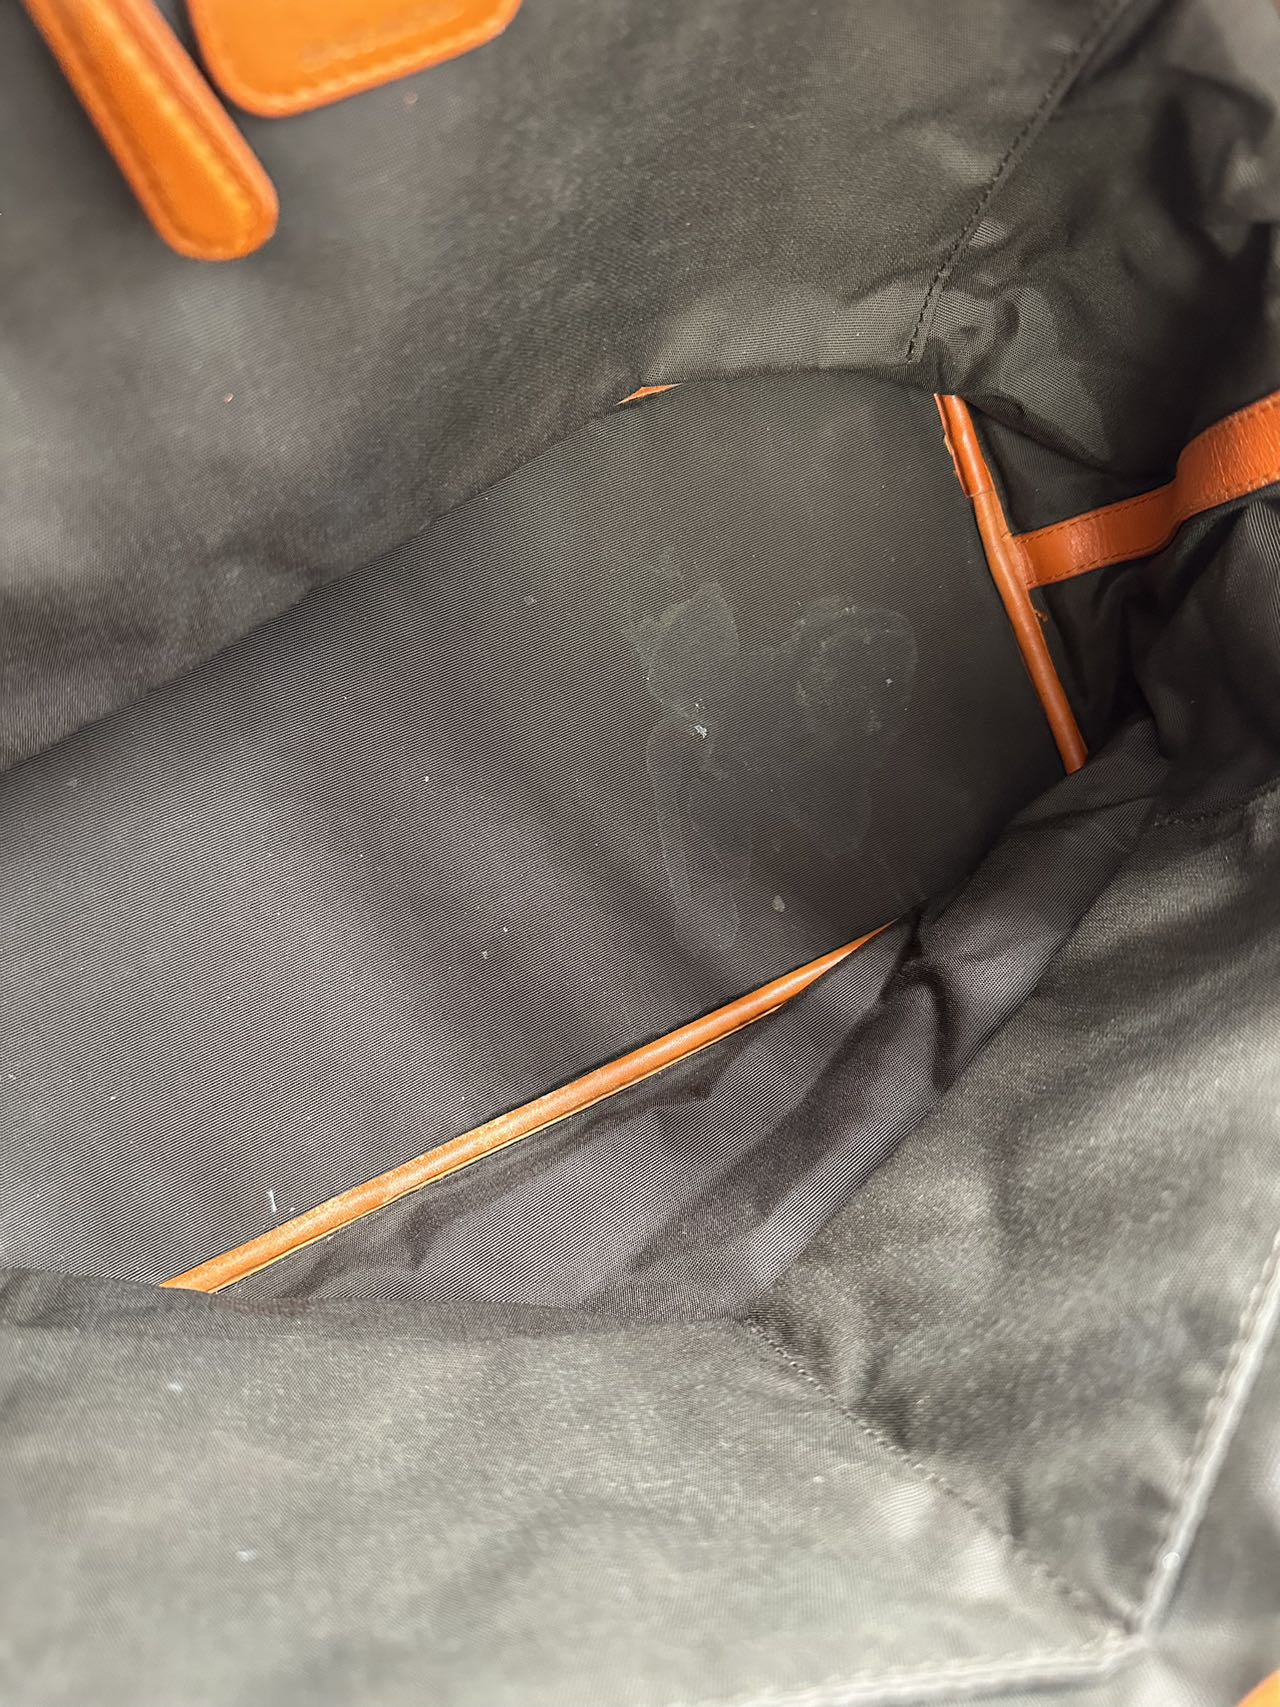 Preloved Christian Dior Orange Leather Totes Shoulder Bag